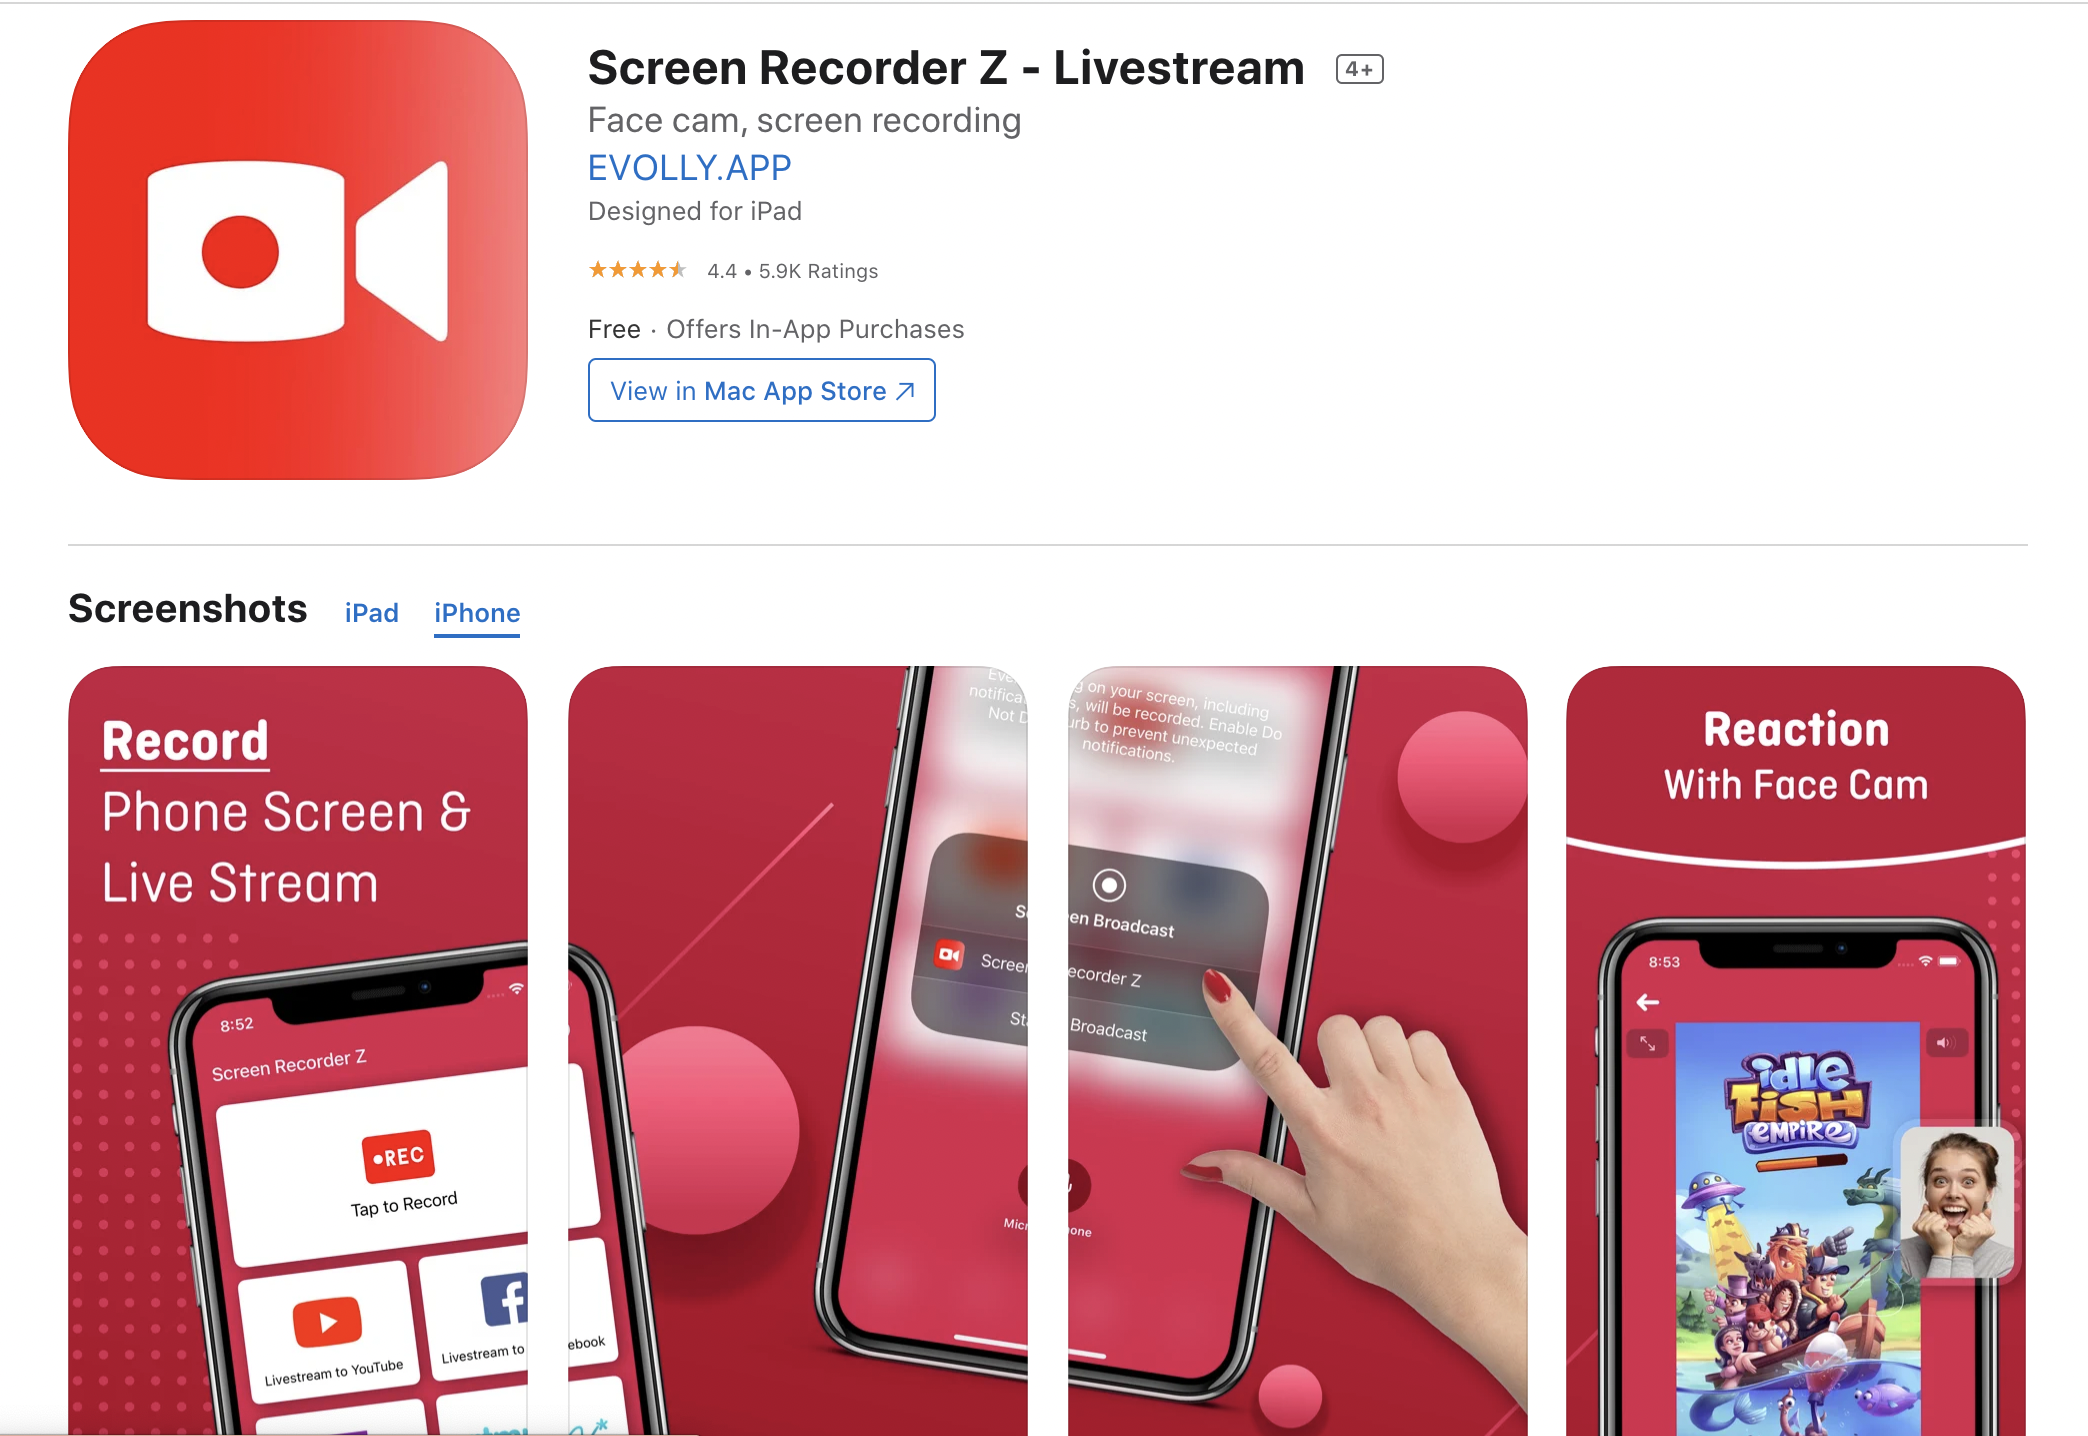 iOS screen recording audio (screen recorder Z)